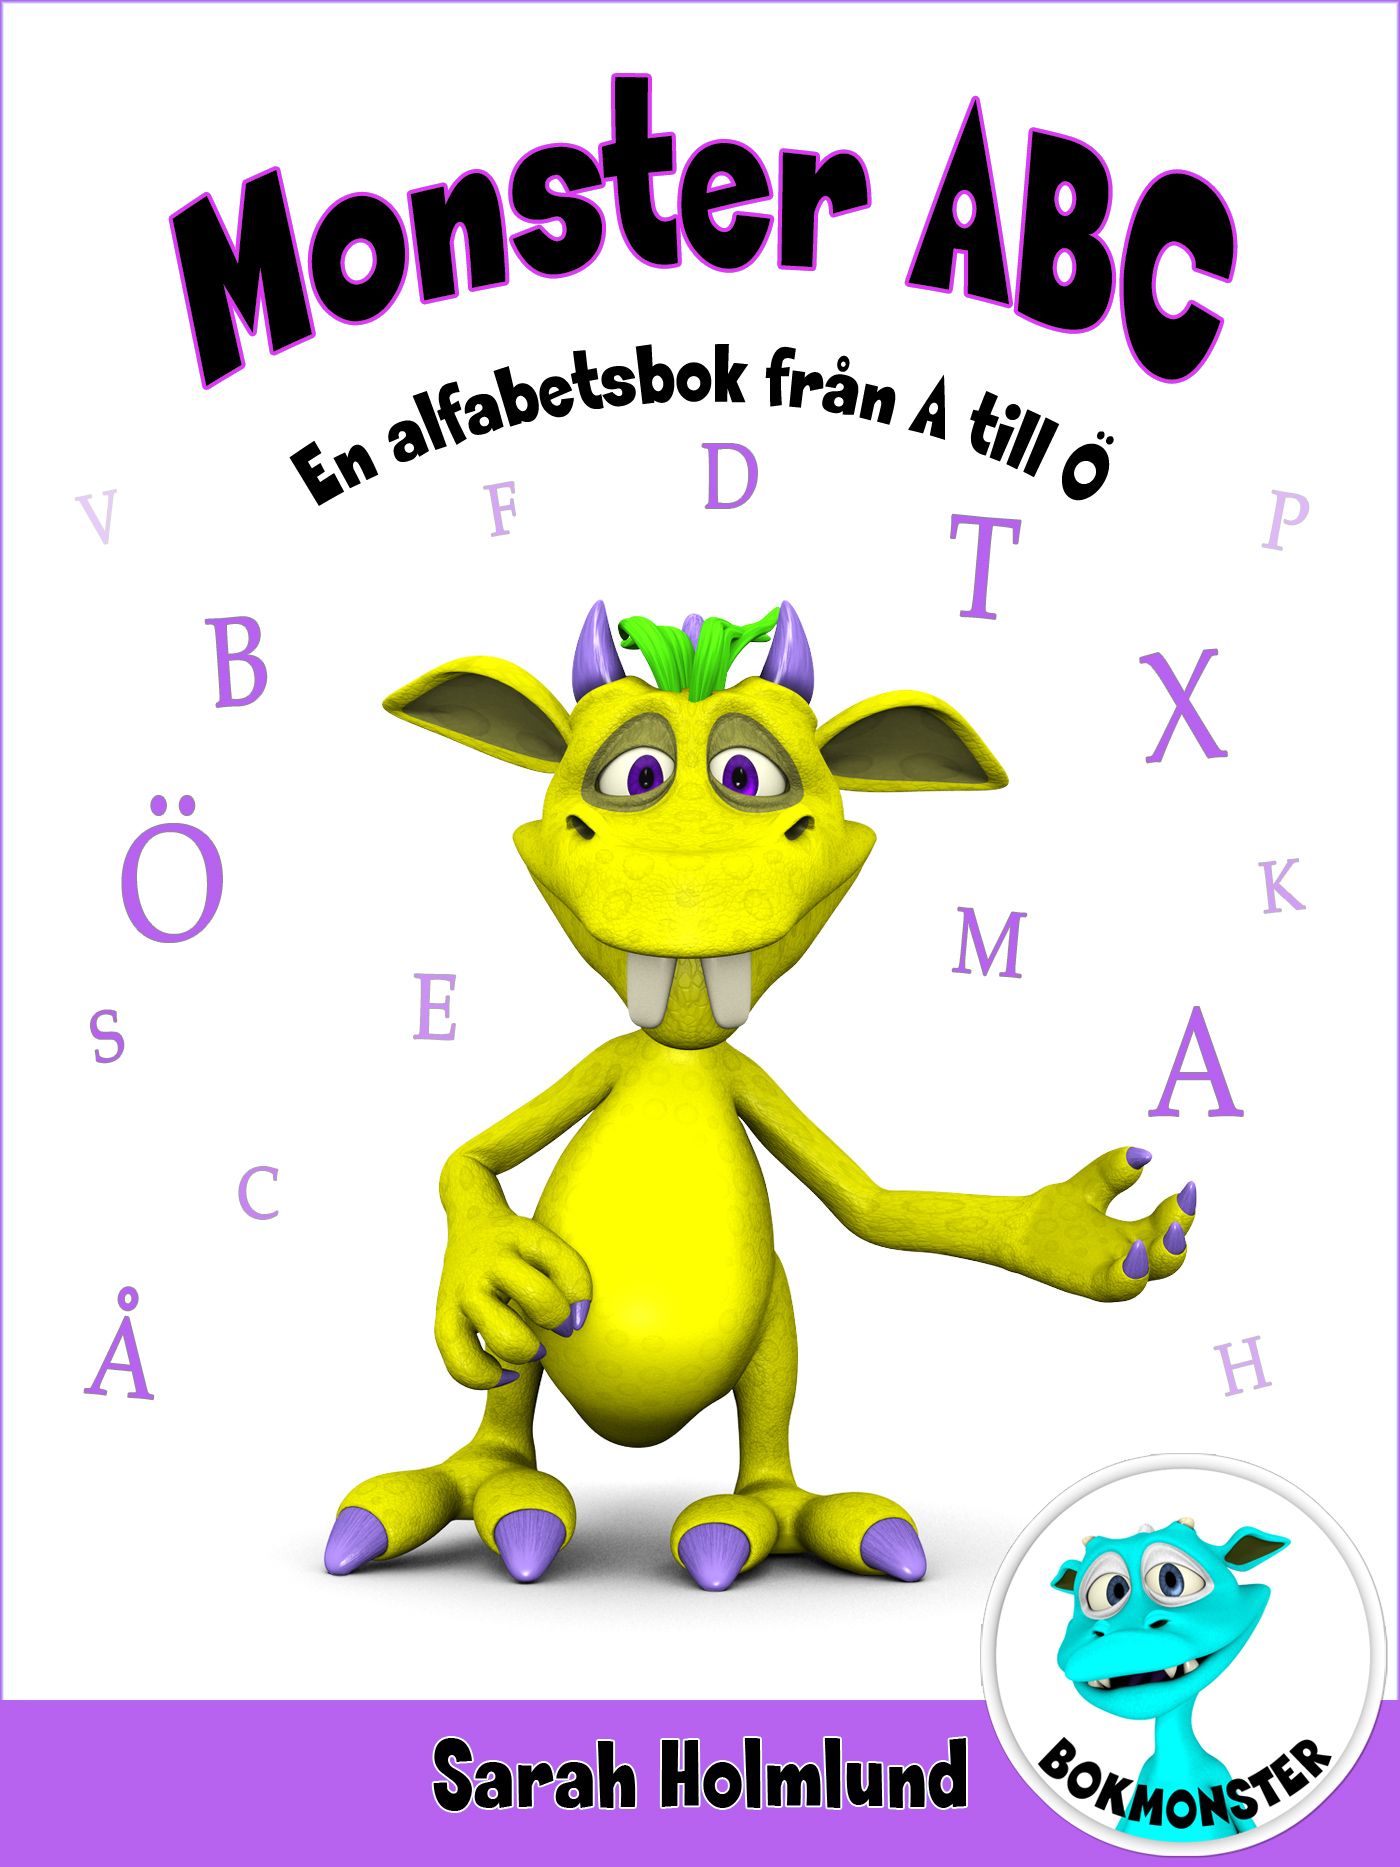 Monster ABC. En alfabetsbok från A till Ö, e-bok av Sarah Holmlund